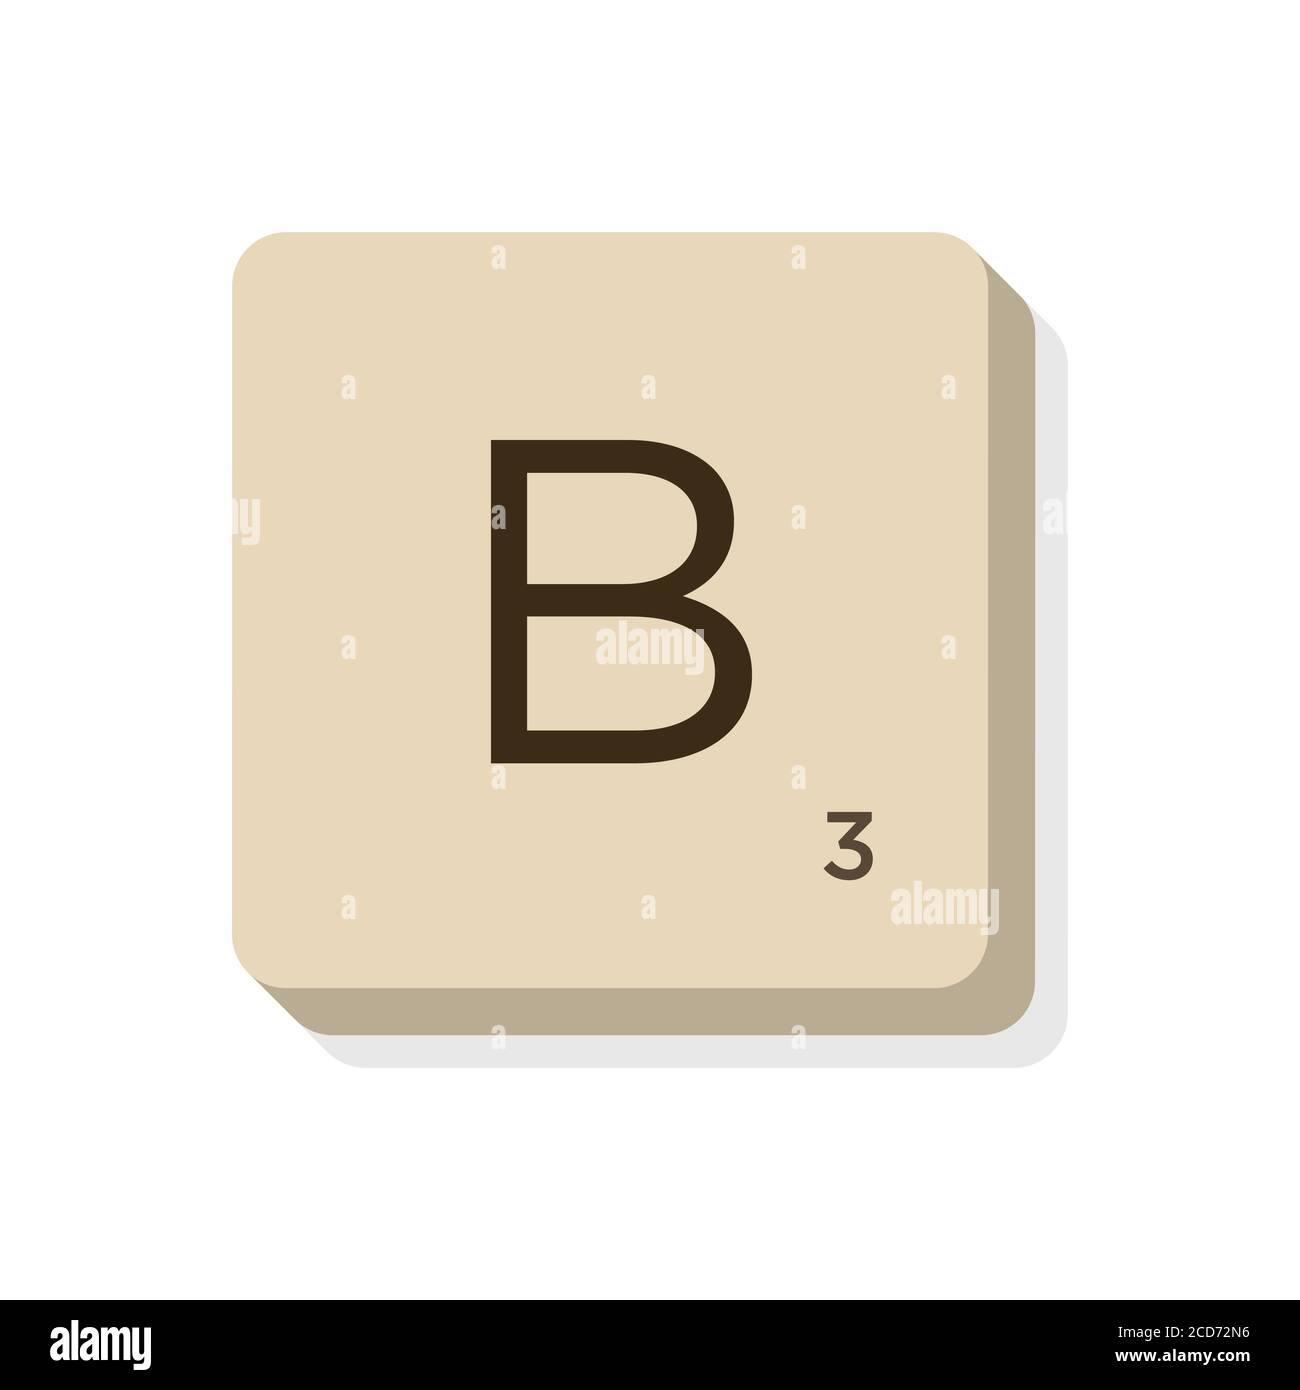 Lettera B in alfabeto scrabble. Isolare l'illustrazione vettoriale per comporre parole e frasi personalizzate. Illustrazione Vettoriale